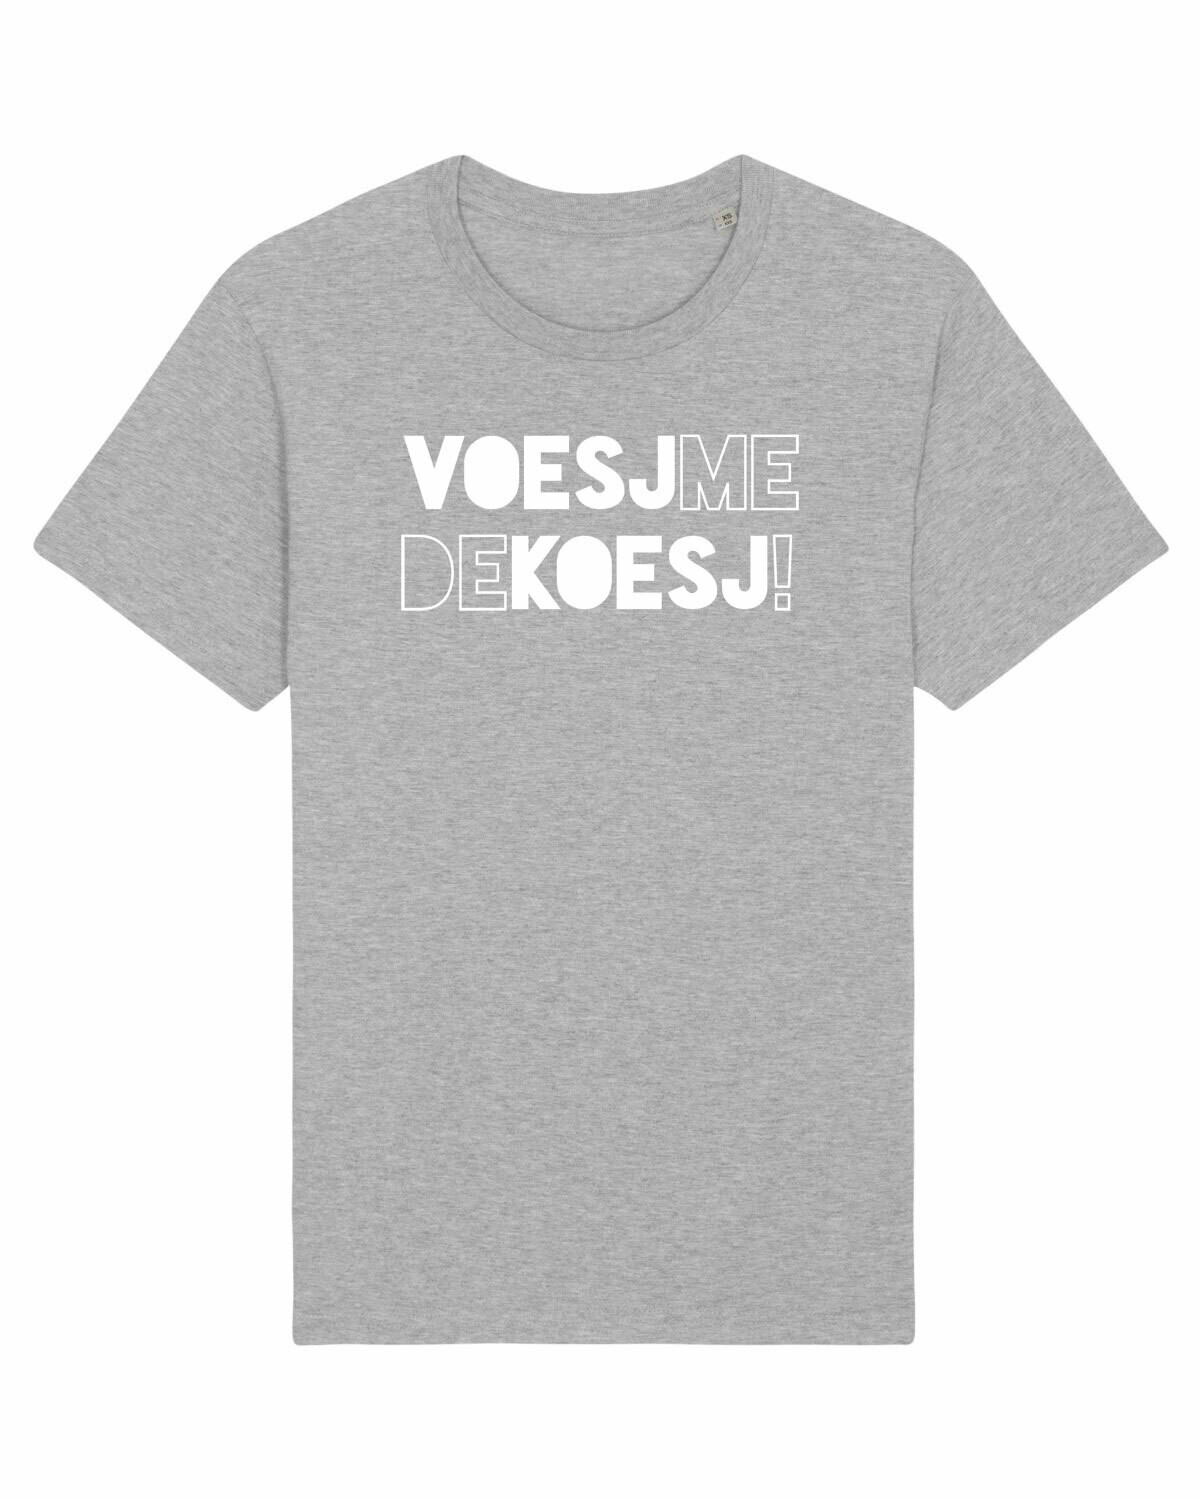 T-shirt VOESJ-ME-DE-KOESJ!